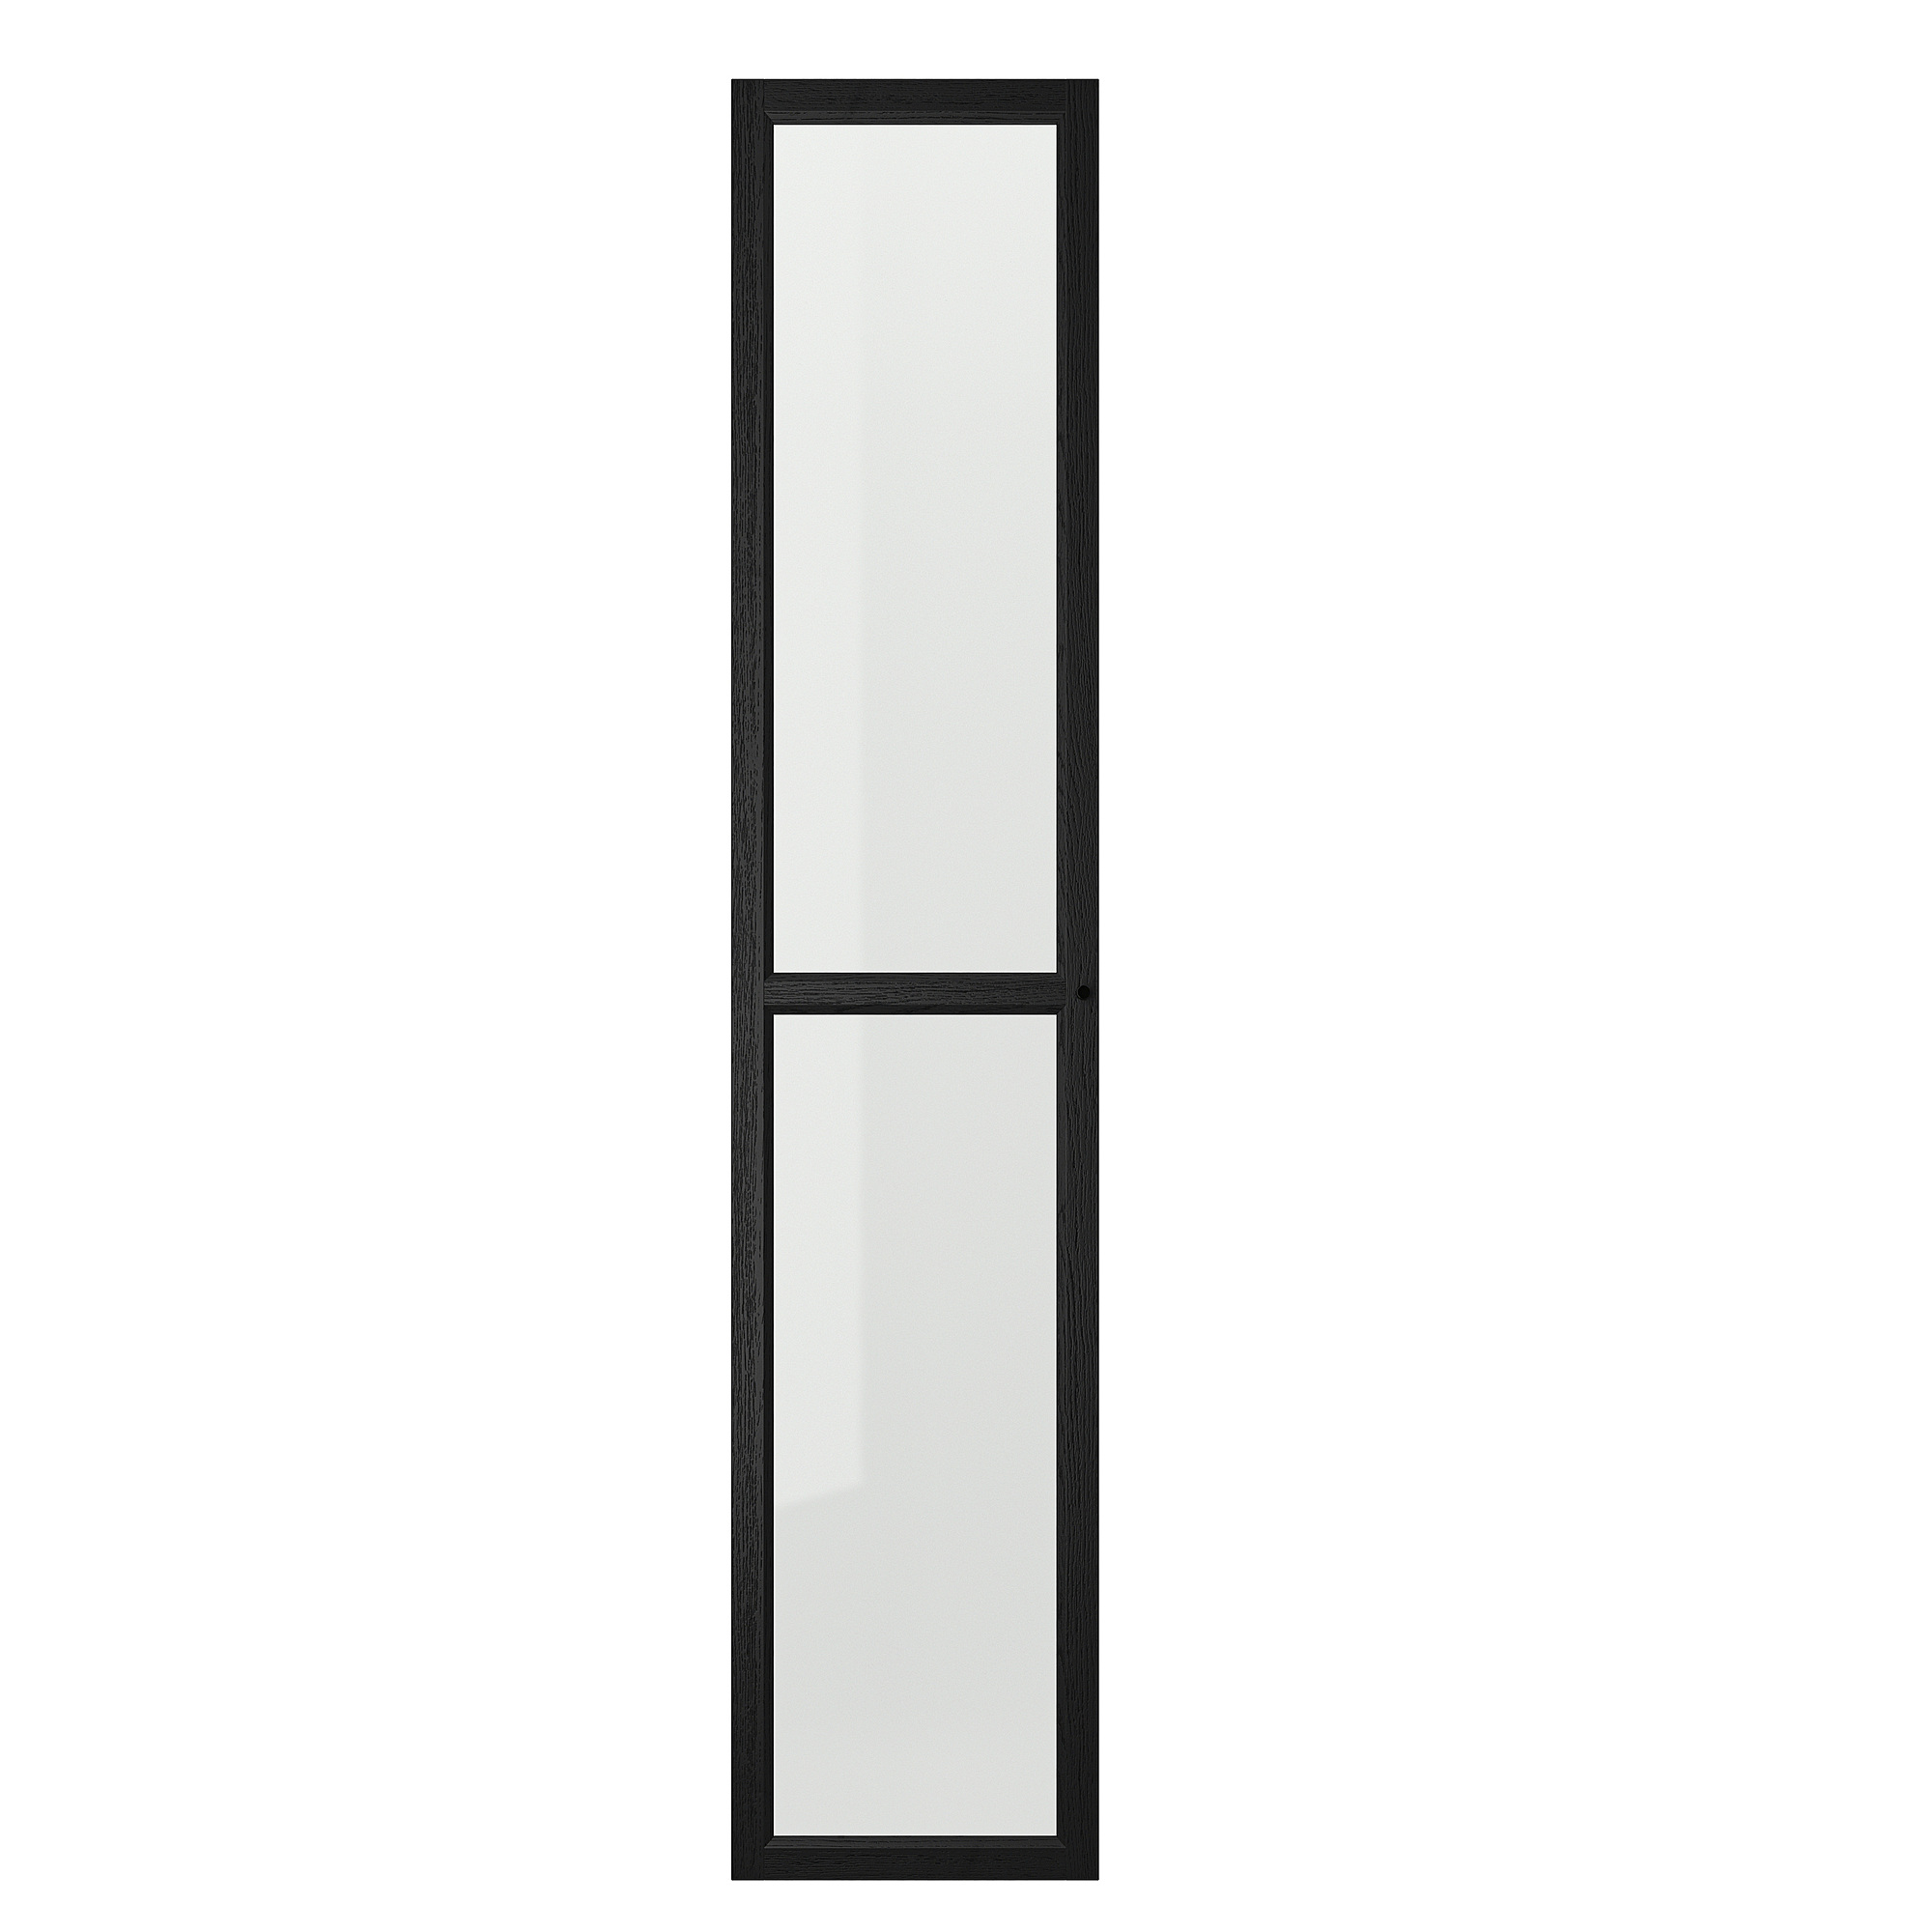 OXBERG glass door